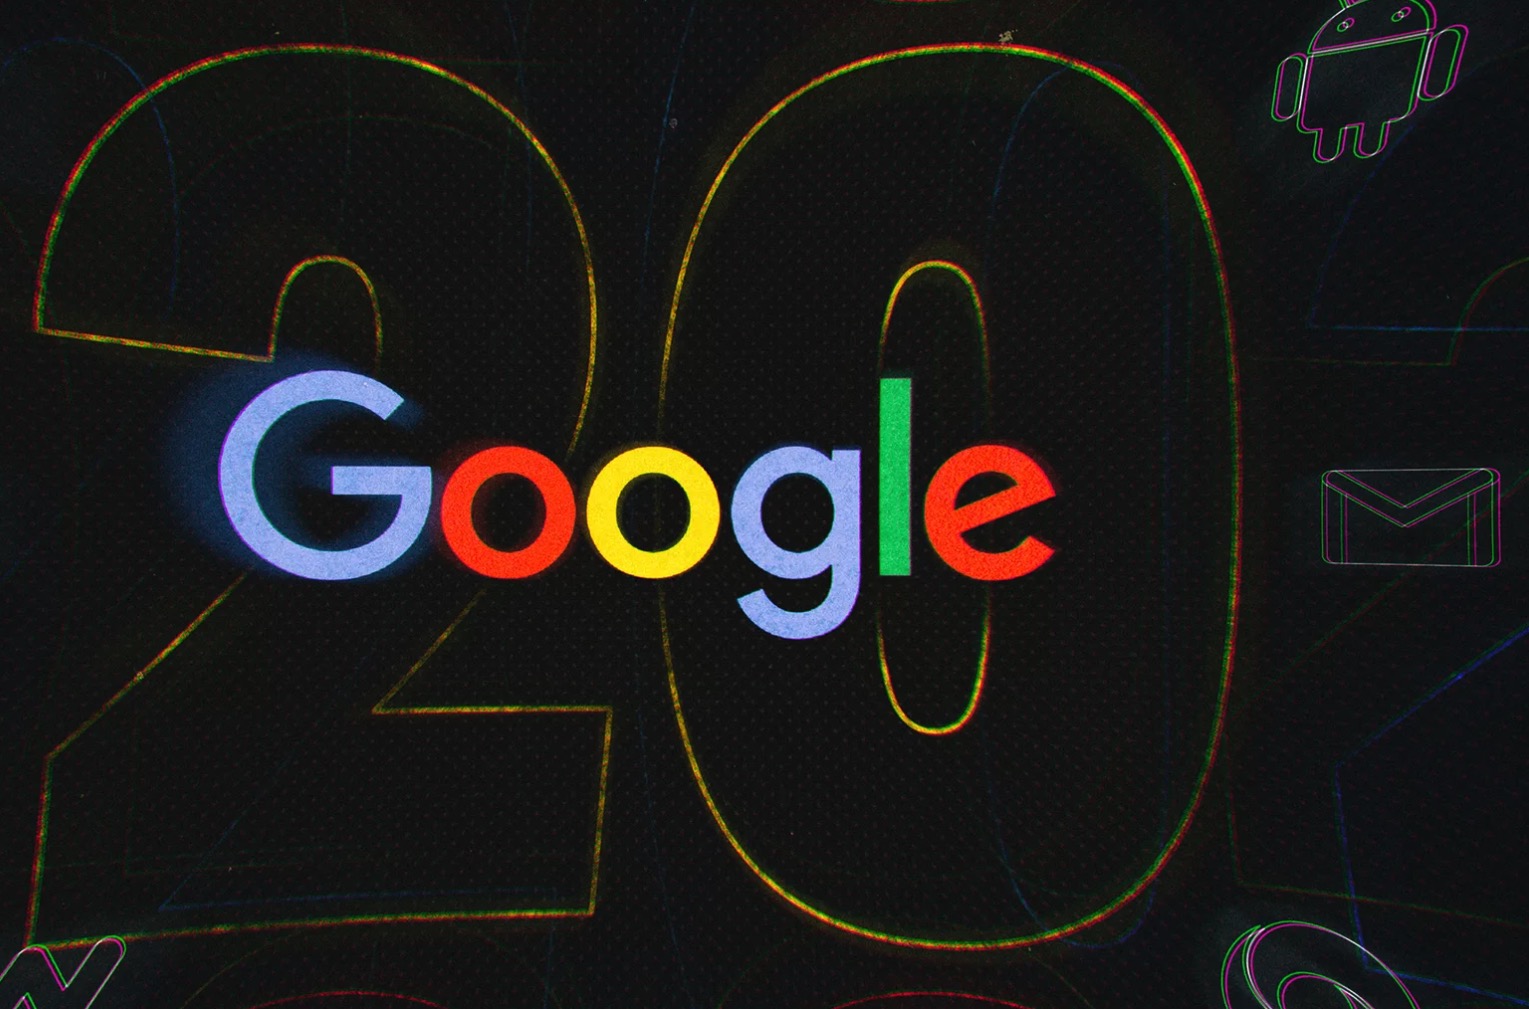 Google谷歌品牌高清壁纸-壁纸图片大全